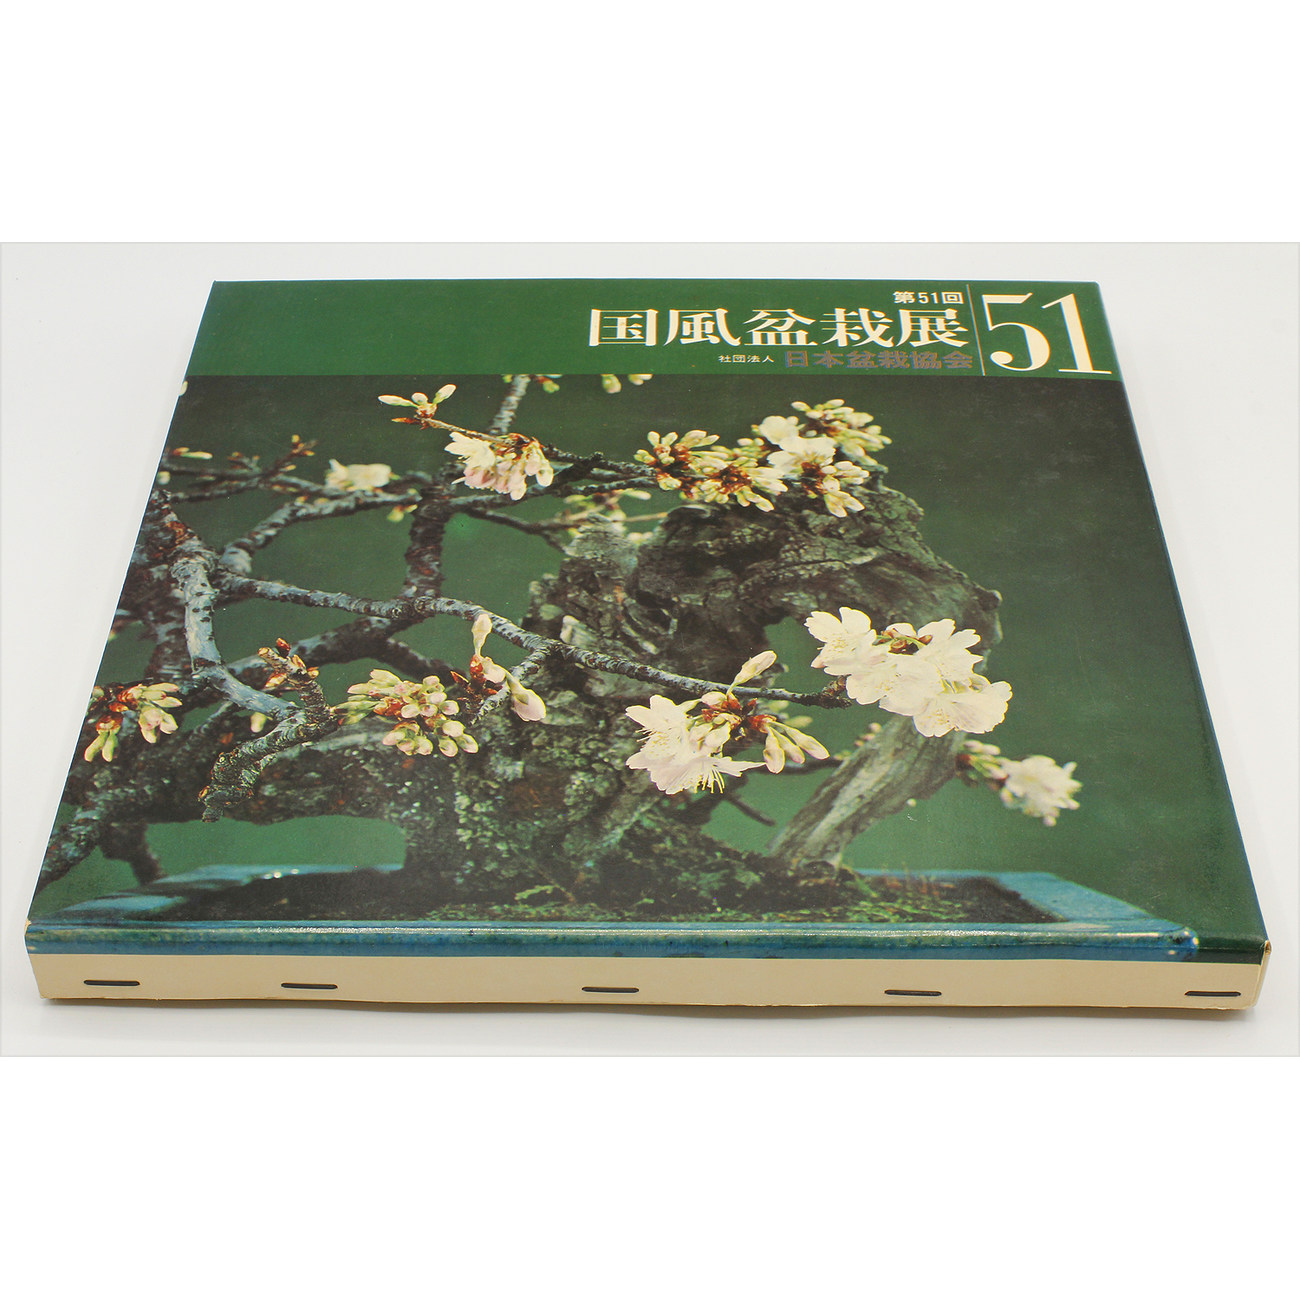 Libro exposición Kokufu 51 -1977-